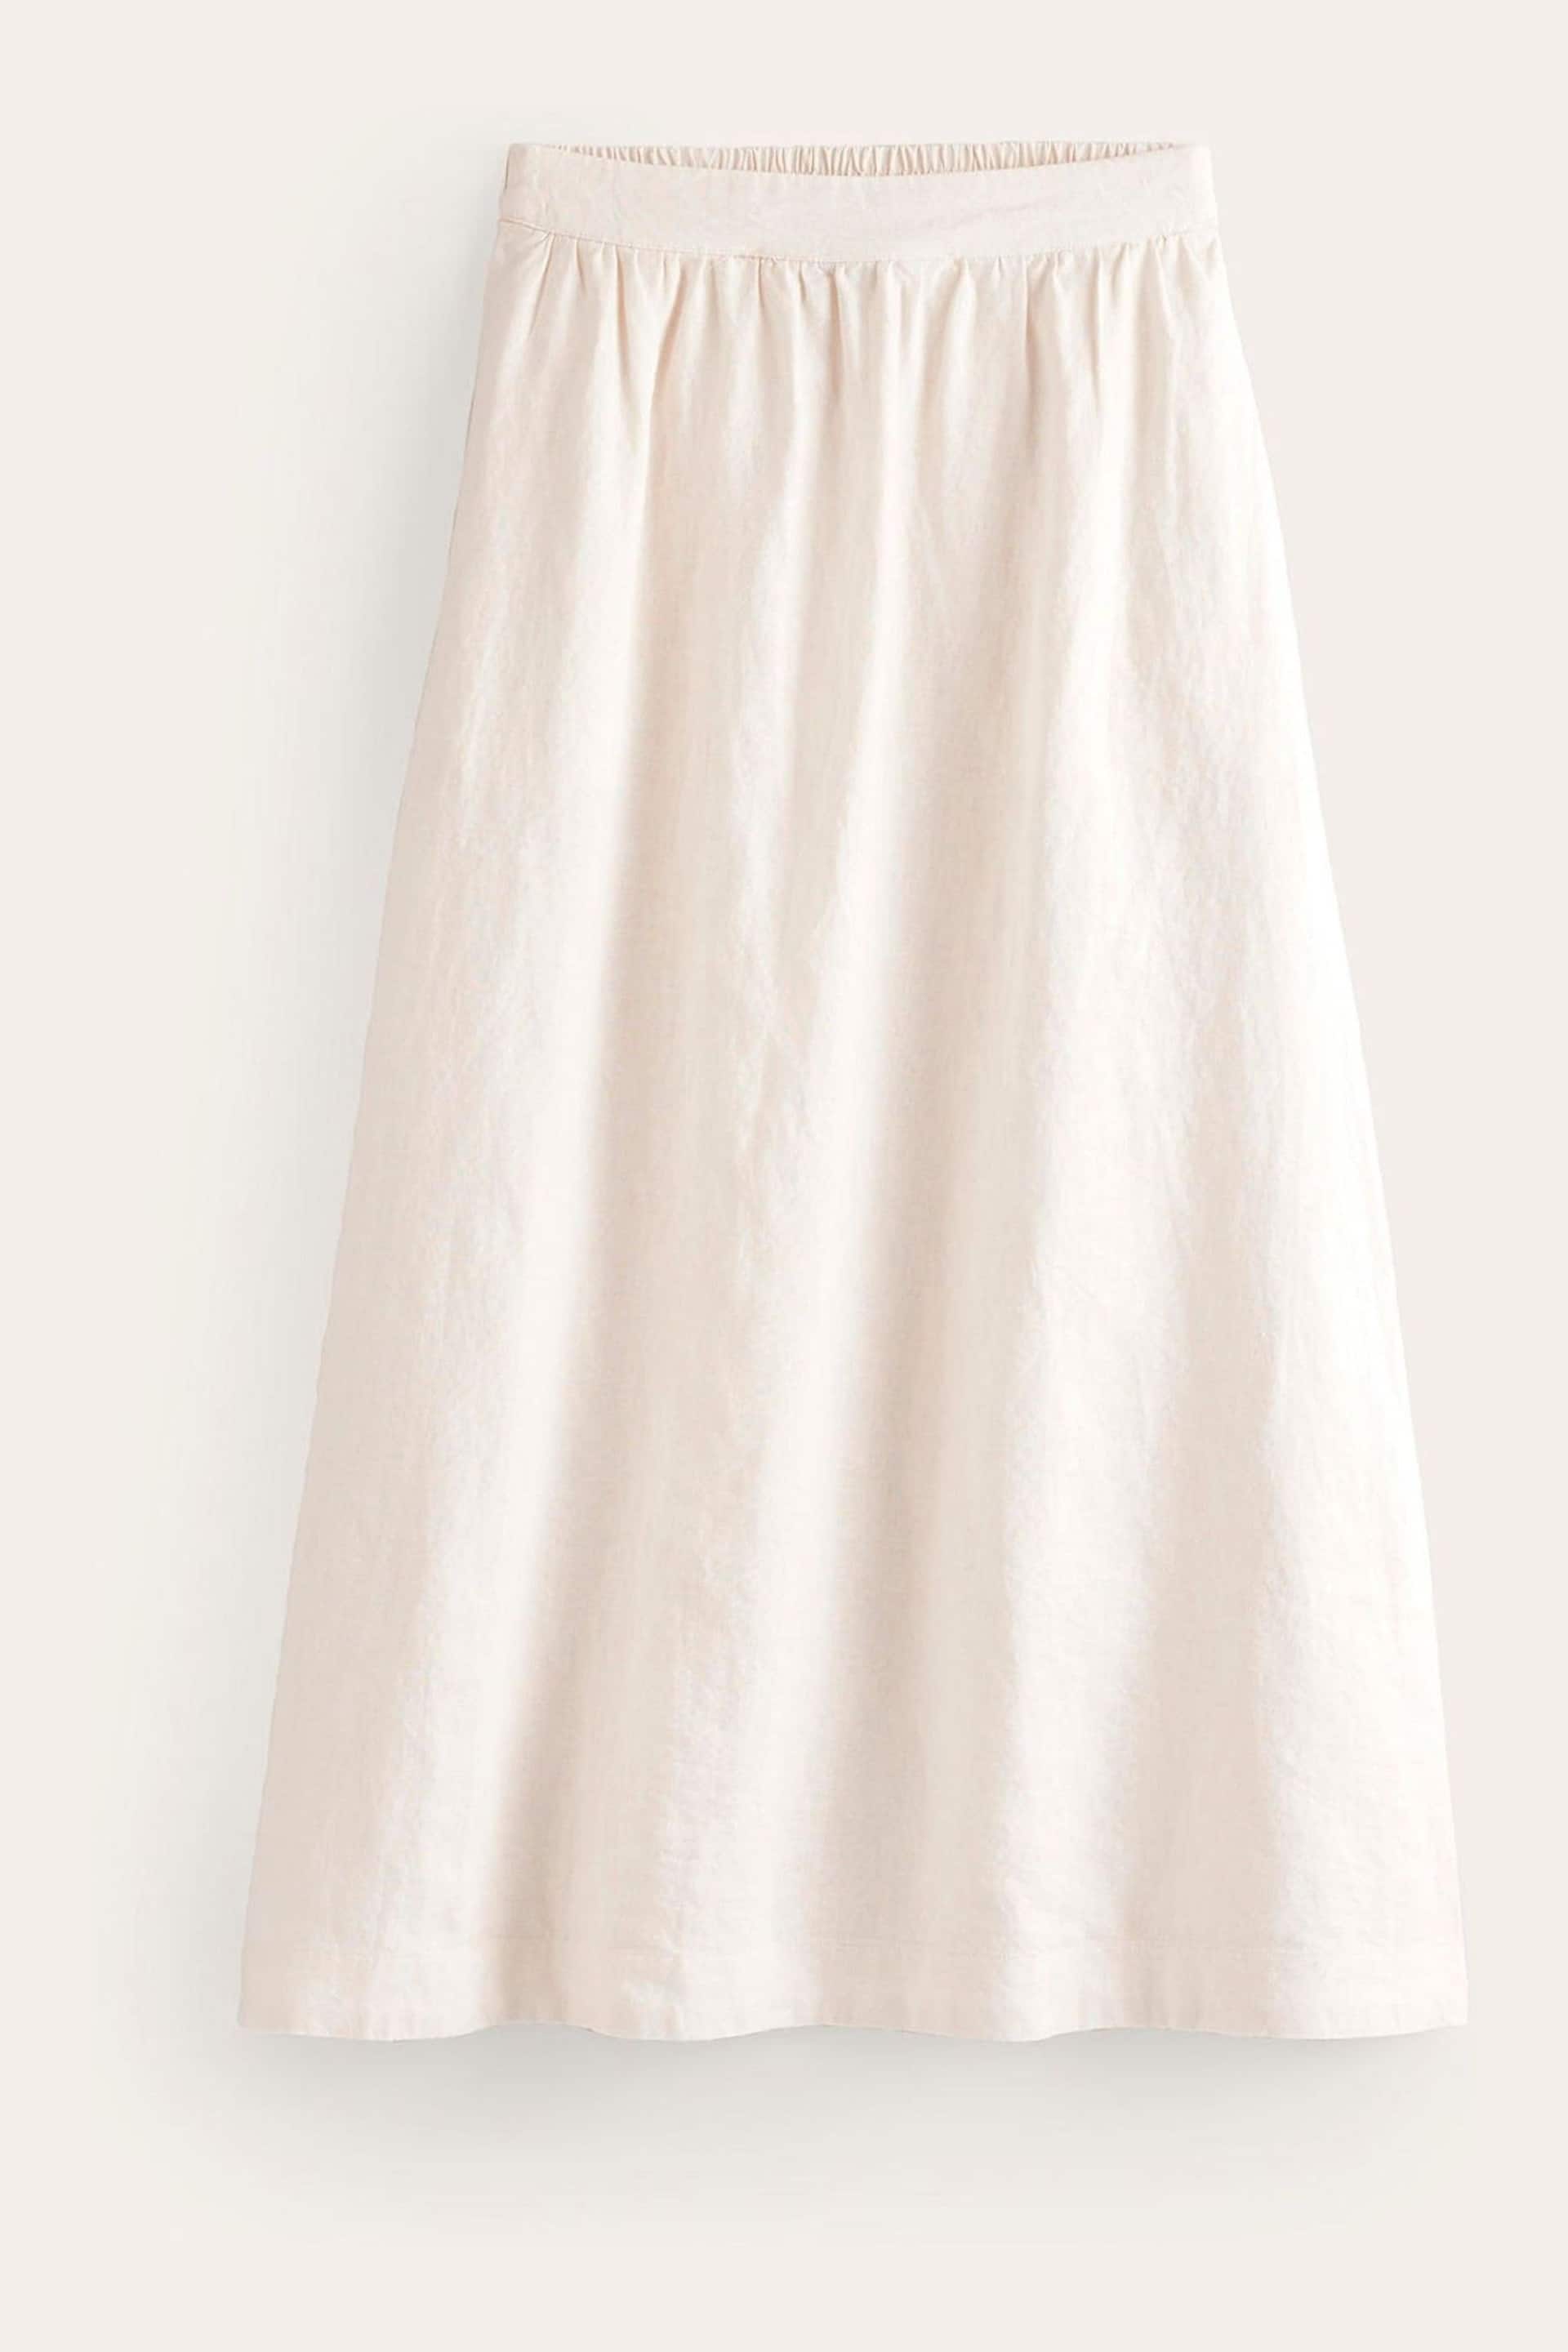 Boden Cream Petite Florence Linen Midi Skirt - Image 5 of 5